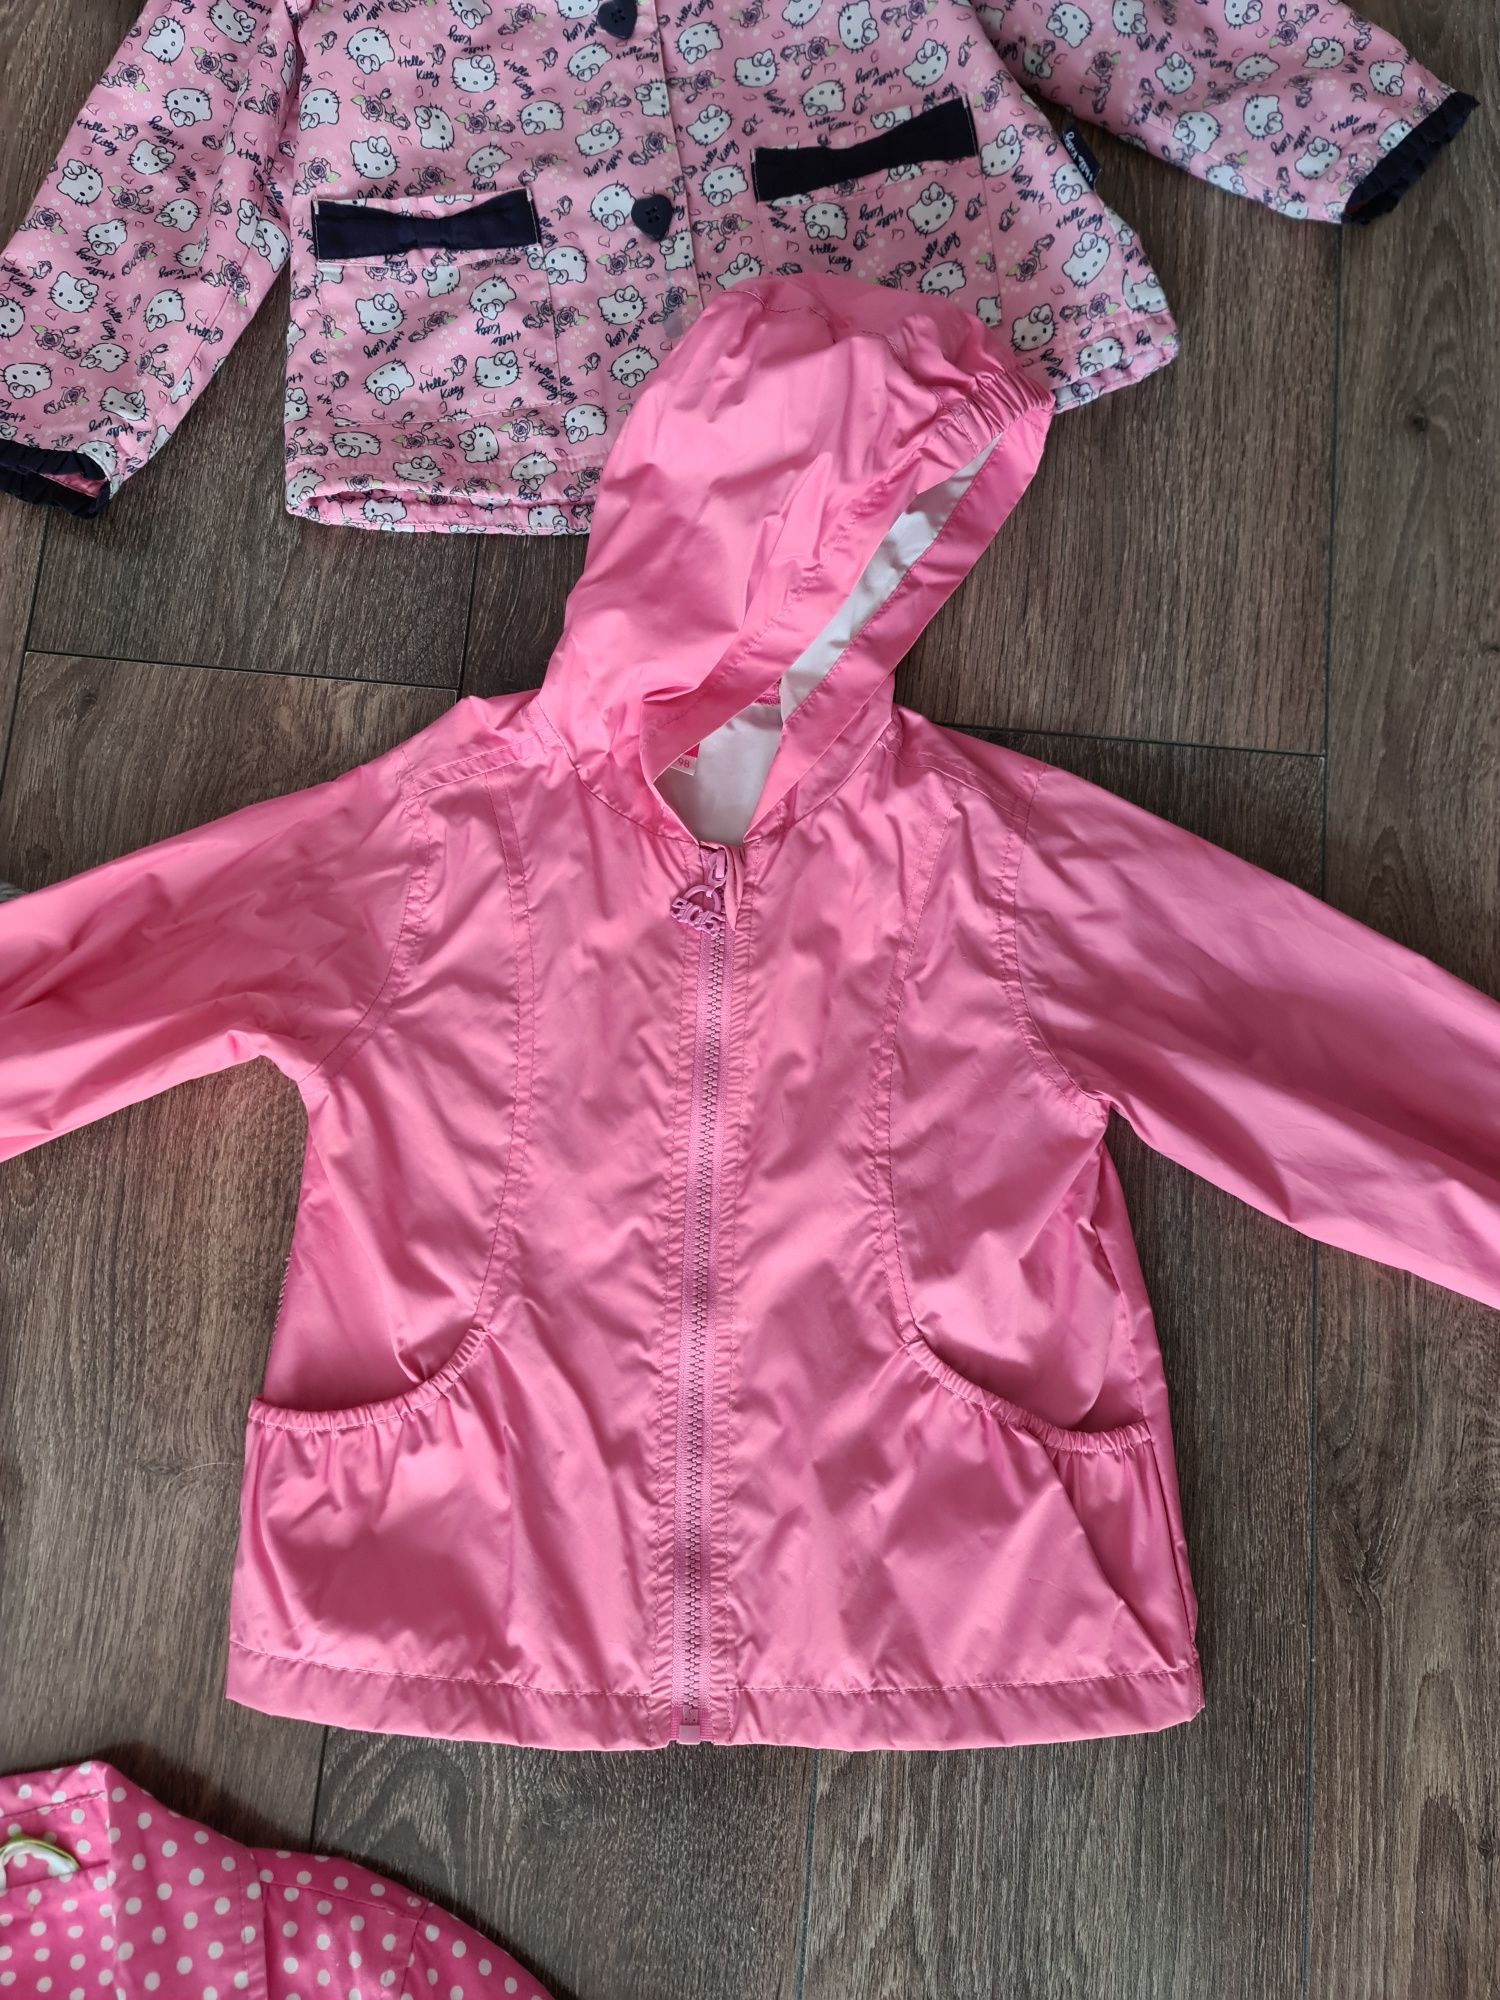 Płaszczyk,kurtka,różowa dziewczynka 92-104 rozmiar